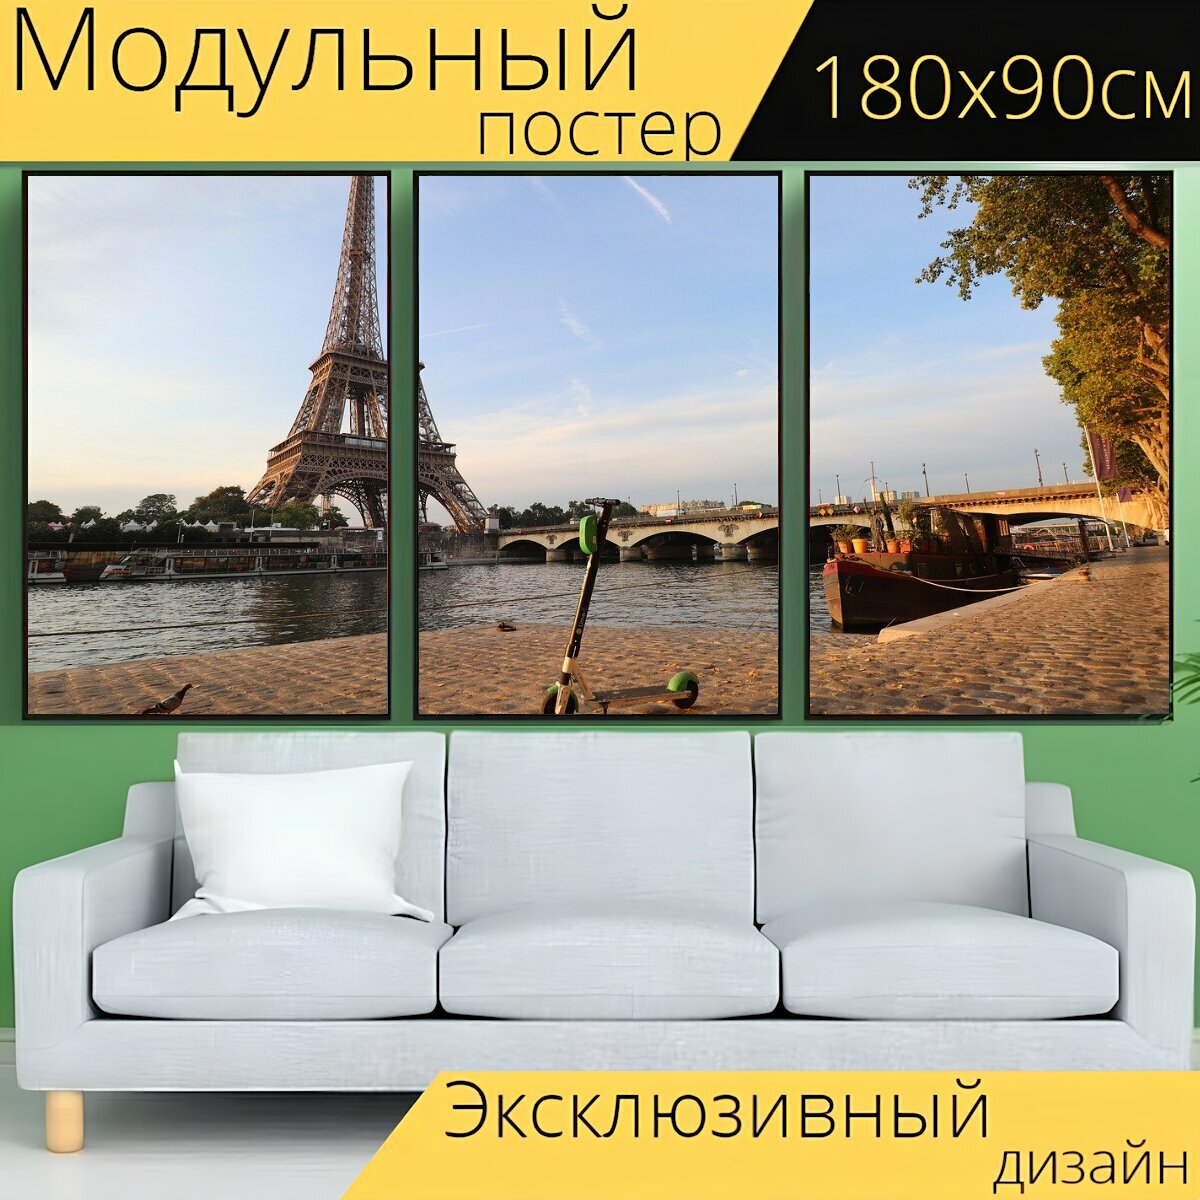 Модульный постер "Париж, франция, пейзаж" 180 x 90 см. для интерьера